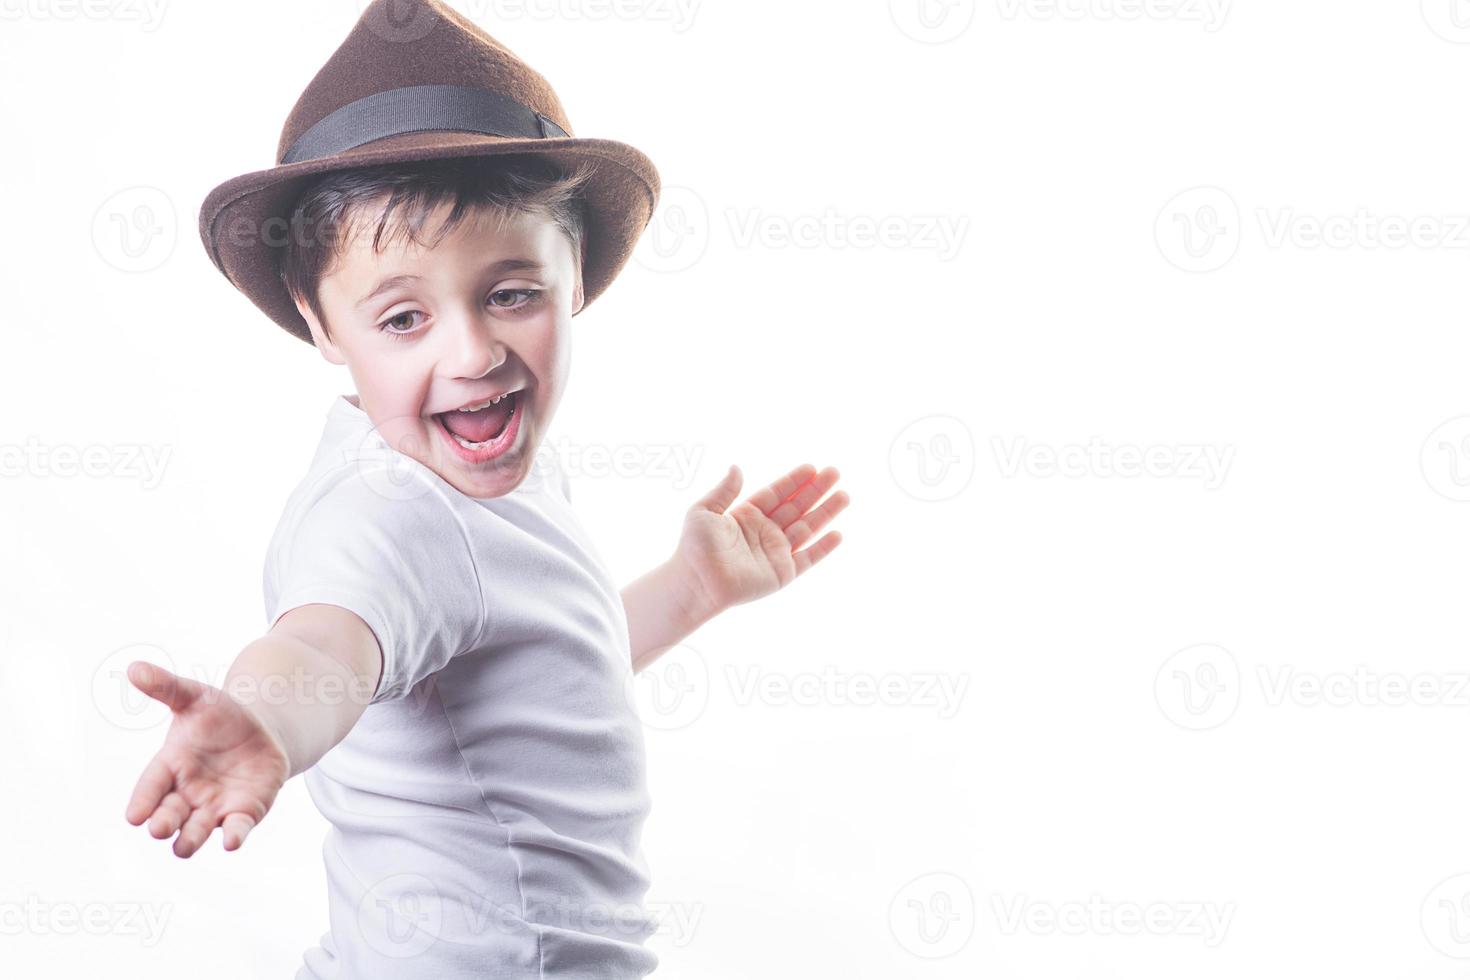 criança sorridente com chapéu foto